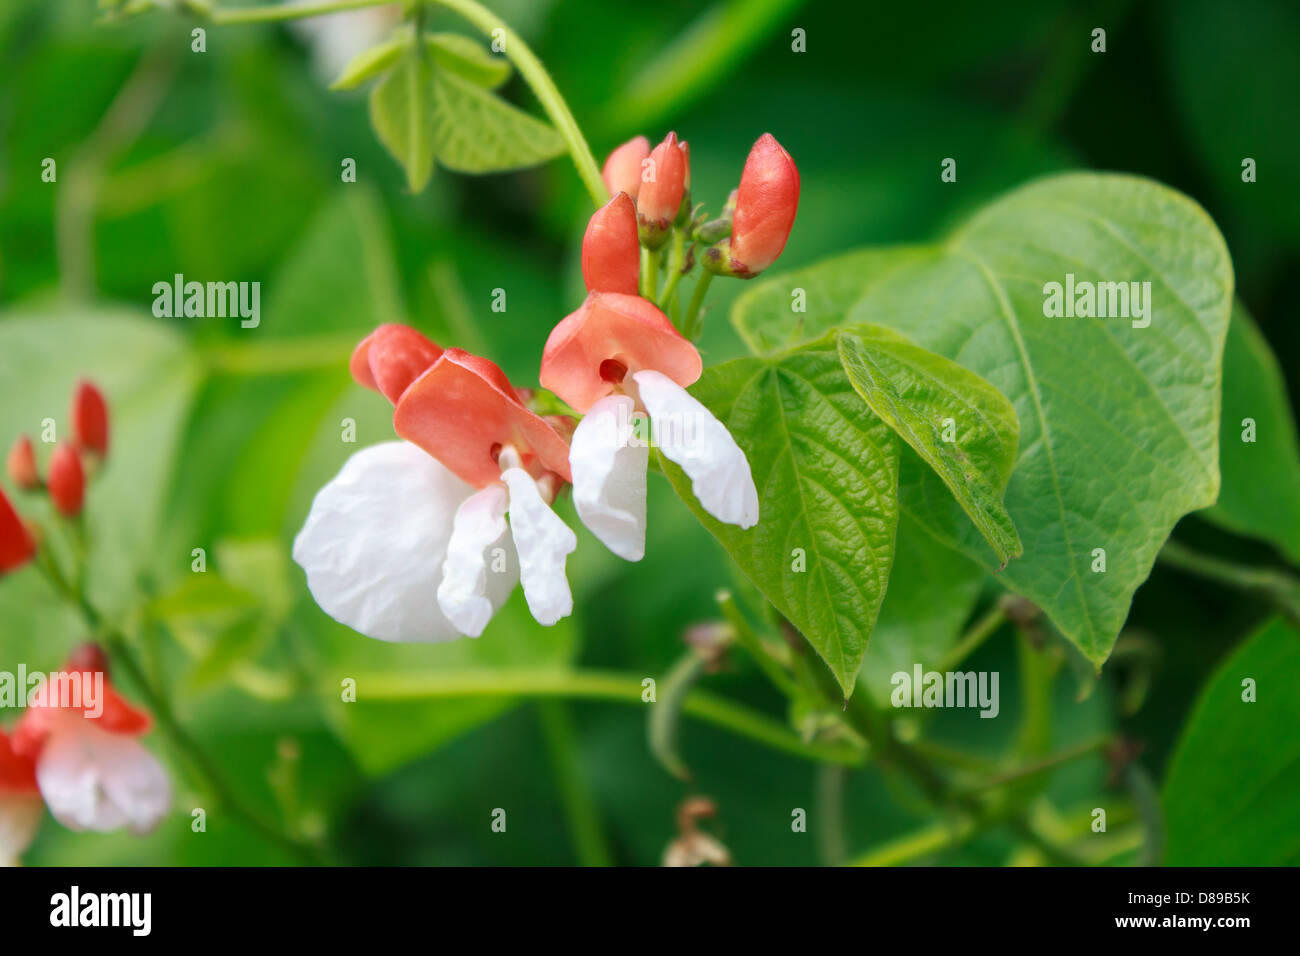 Flowers of Runner Beans in full bloom. Stock Photo